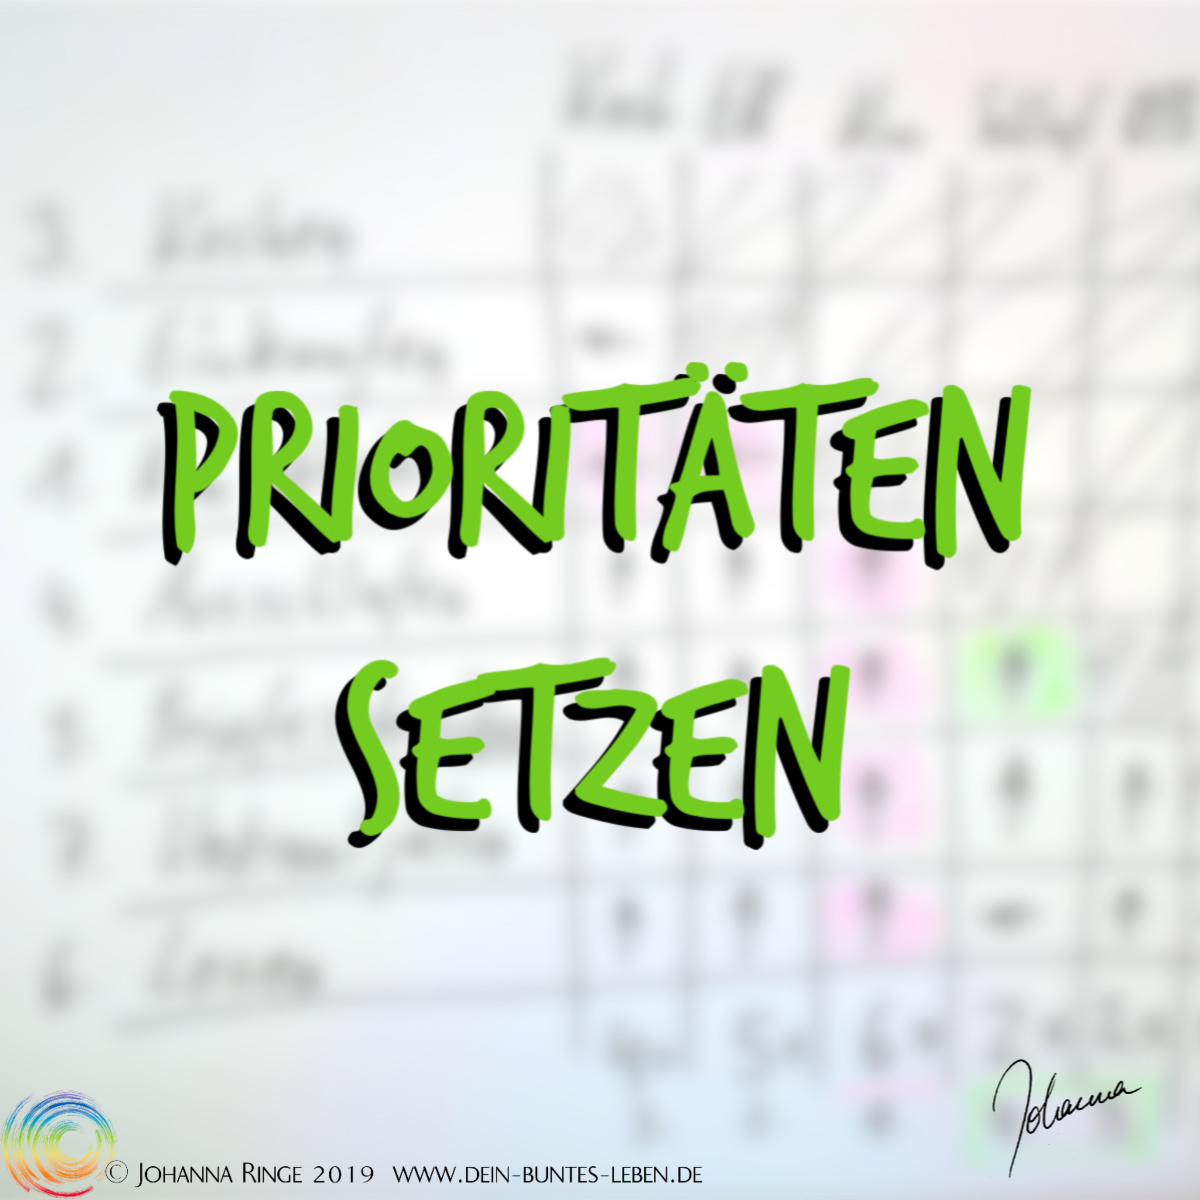 Prioritäten setzen. Text vor Entscheidungsmatrix im Hintergrund. ©Johanna Ringe 2019 www.dein-buntes-leben.de